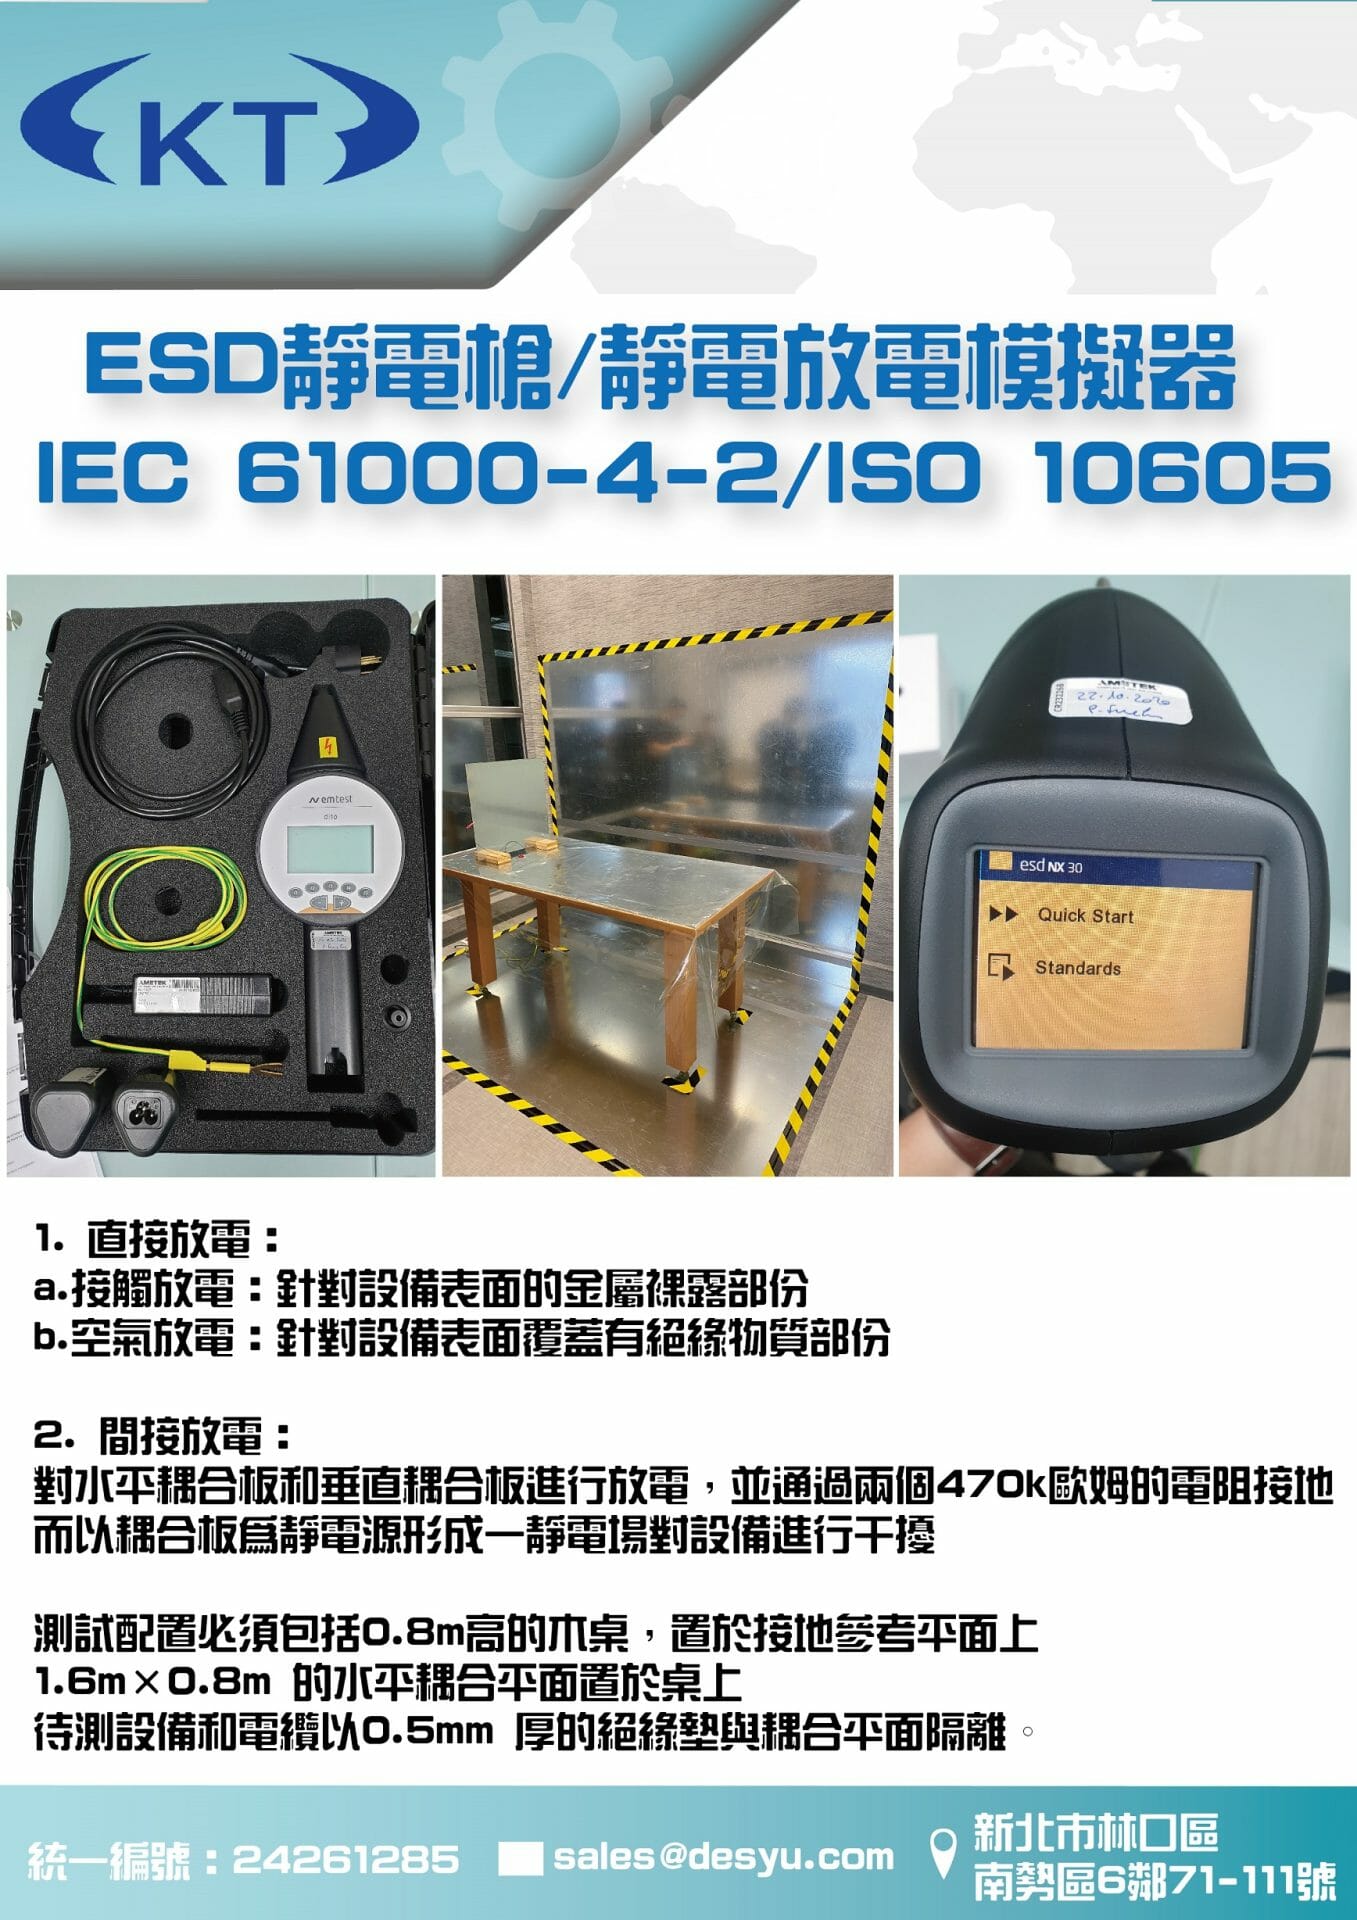 閱讀更多關於這篇文章 ESD靜電槍/靜電放電模擬器 IEC 61000-4-2/ISO 10605